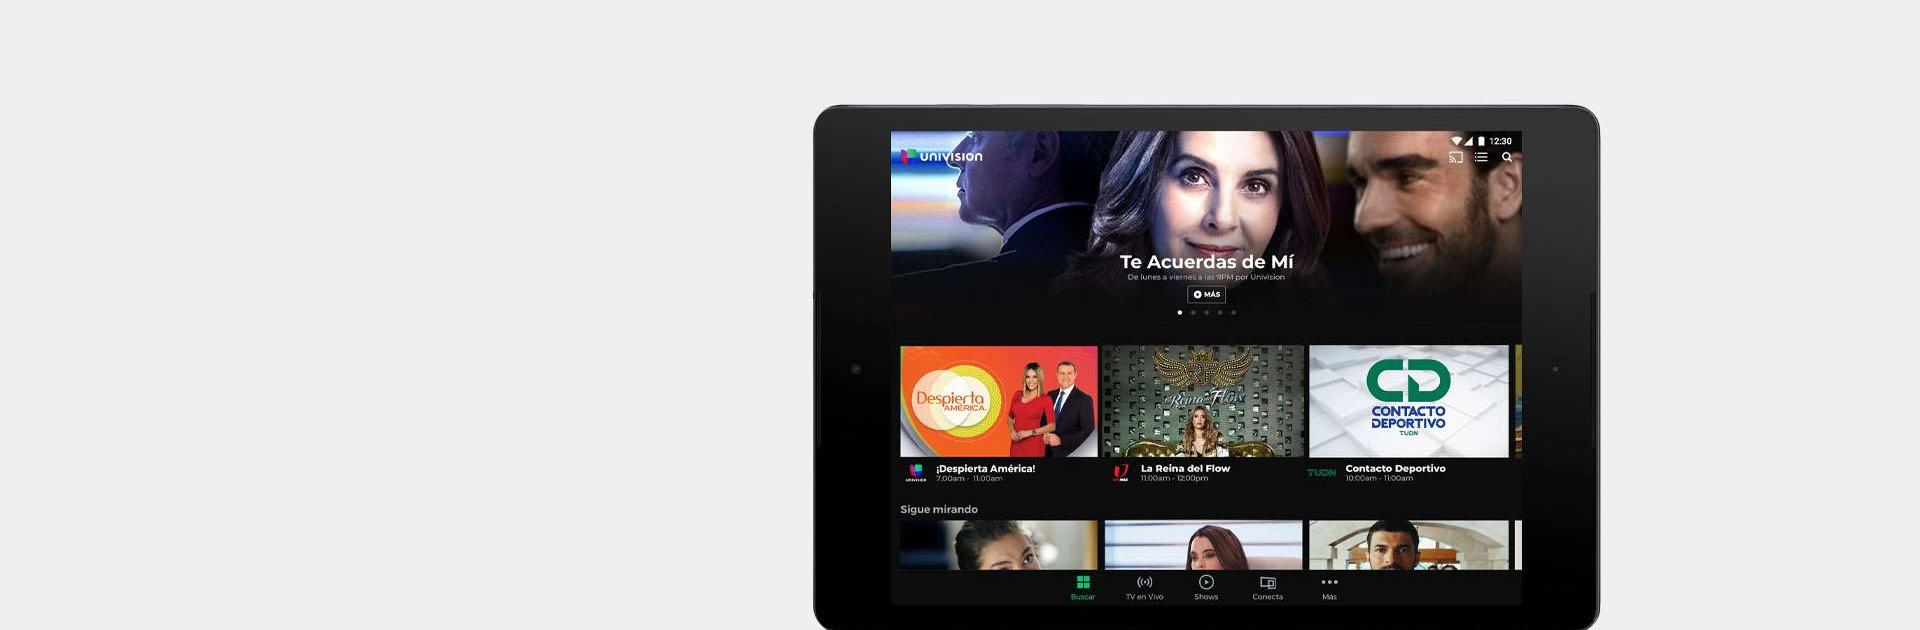 Univision App: Stream TV Shows